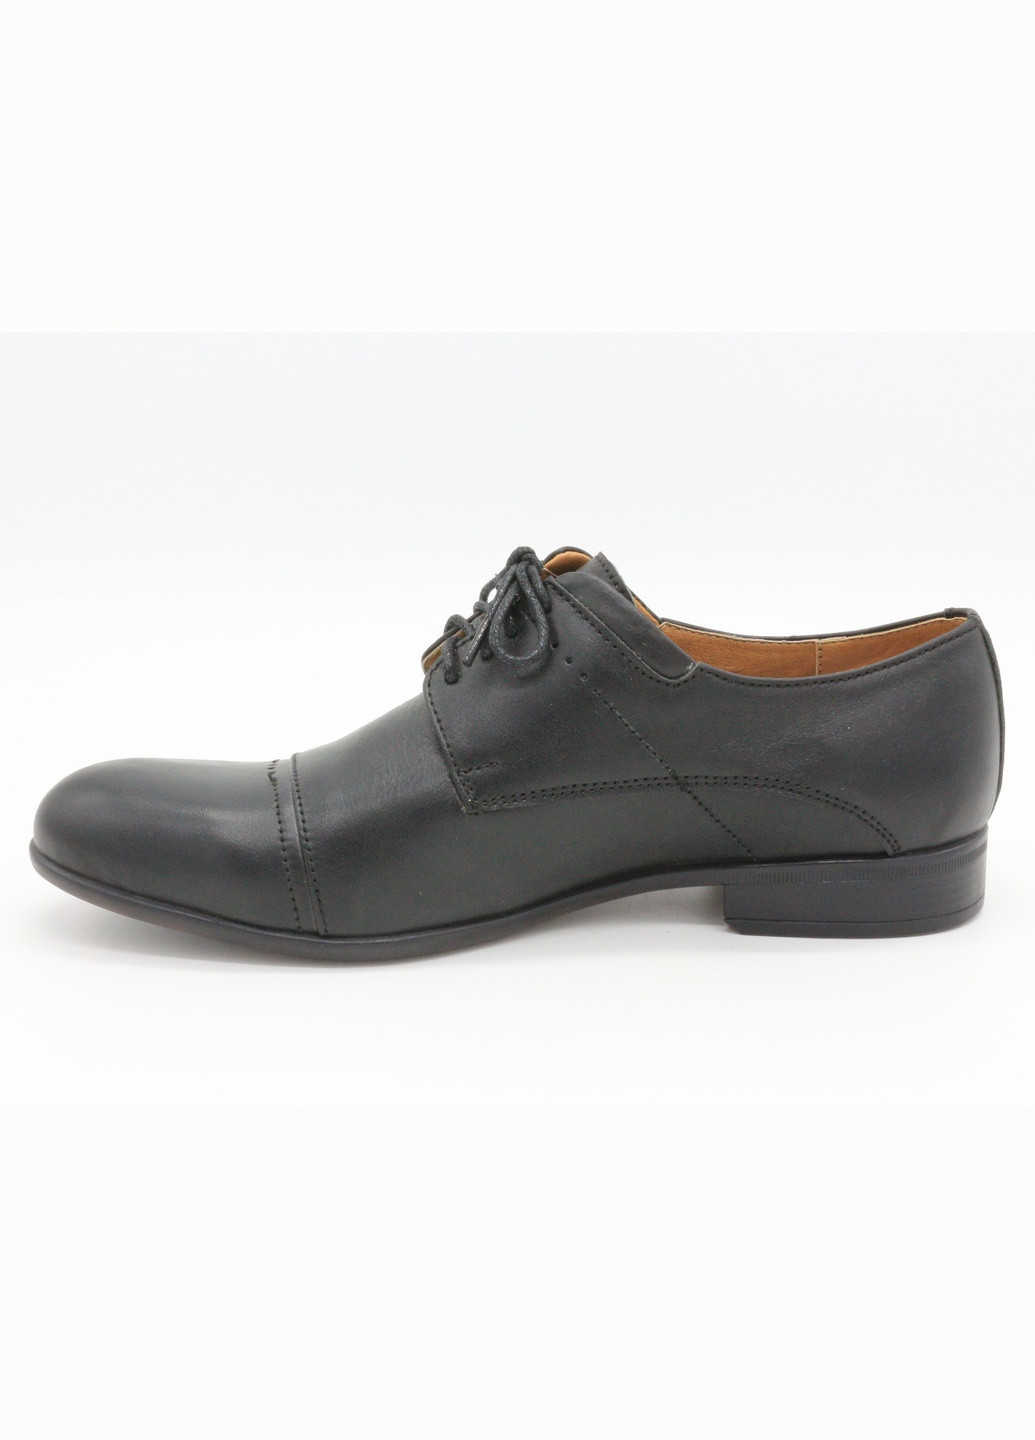 Черные чоловічі туфлі чорні шкіряні b-17-13 30 см (р) Botus